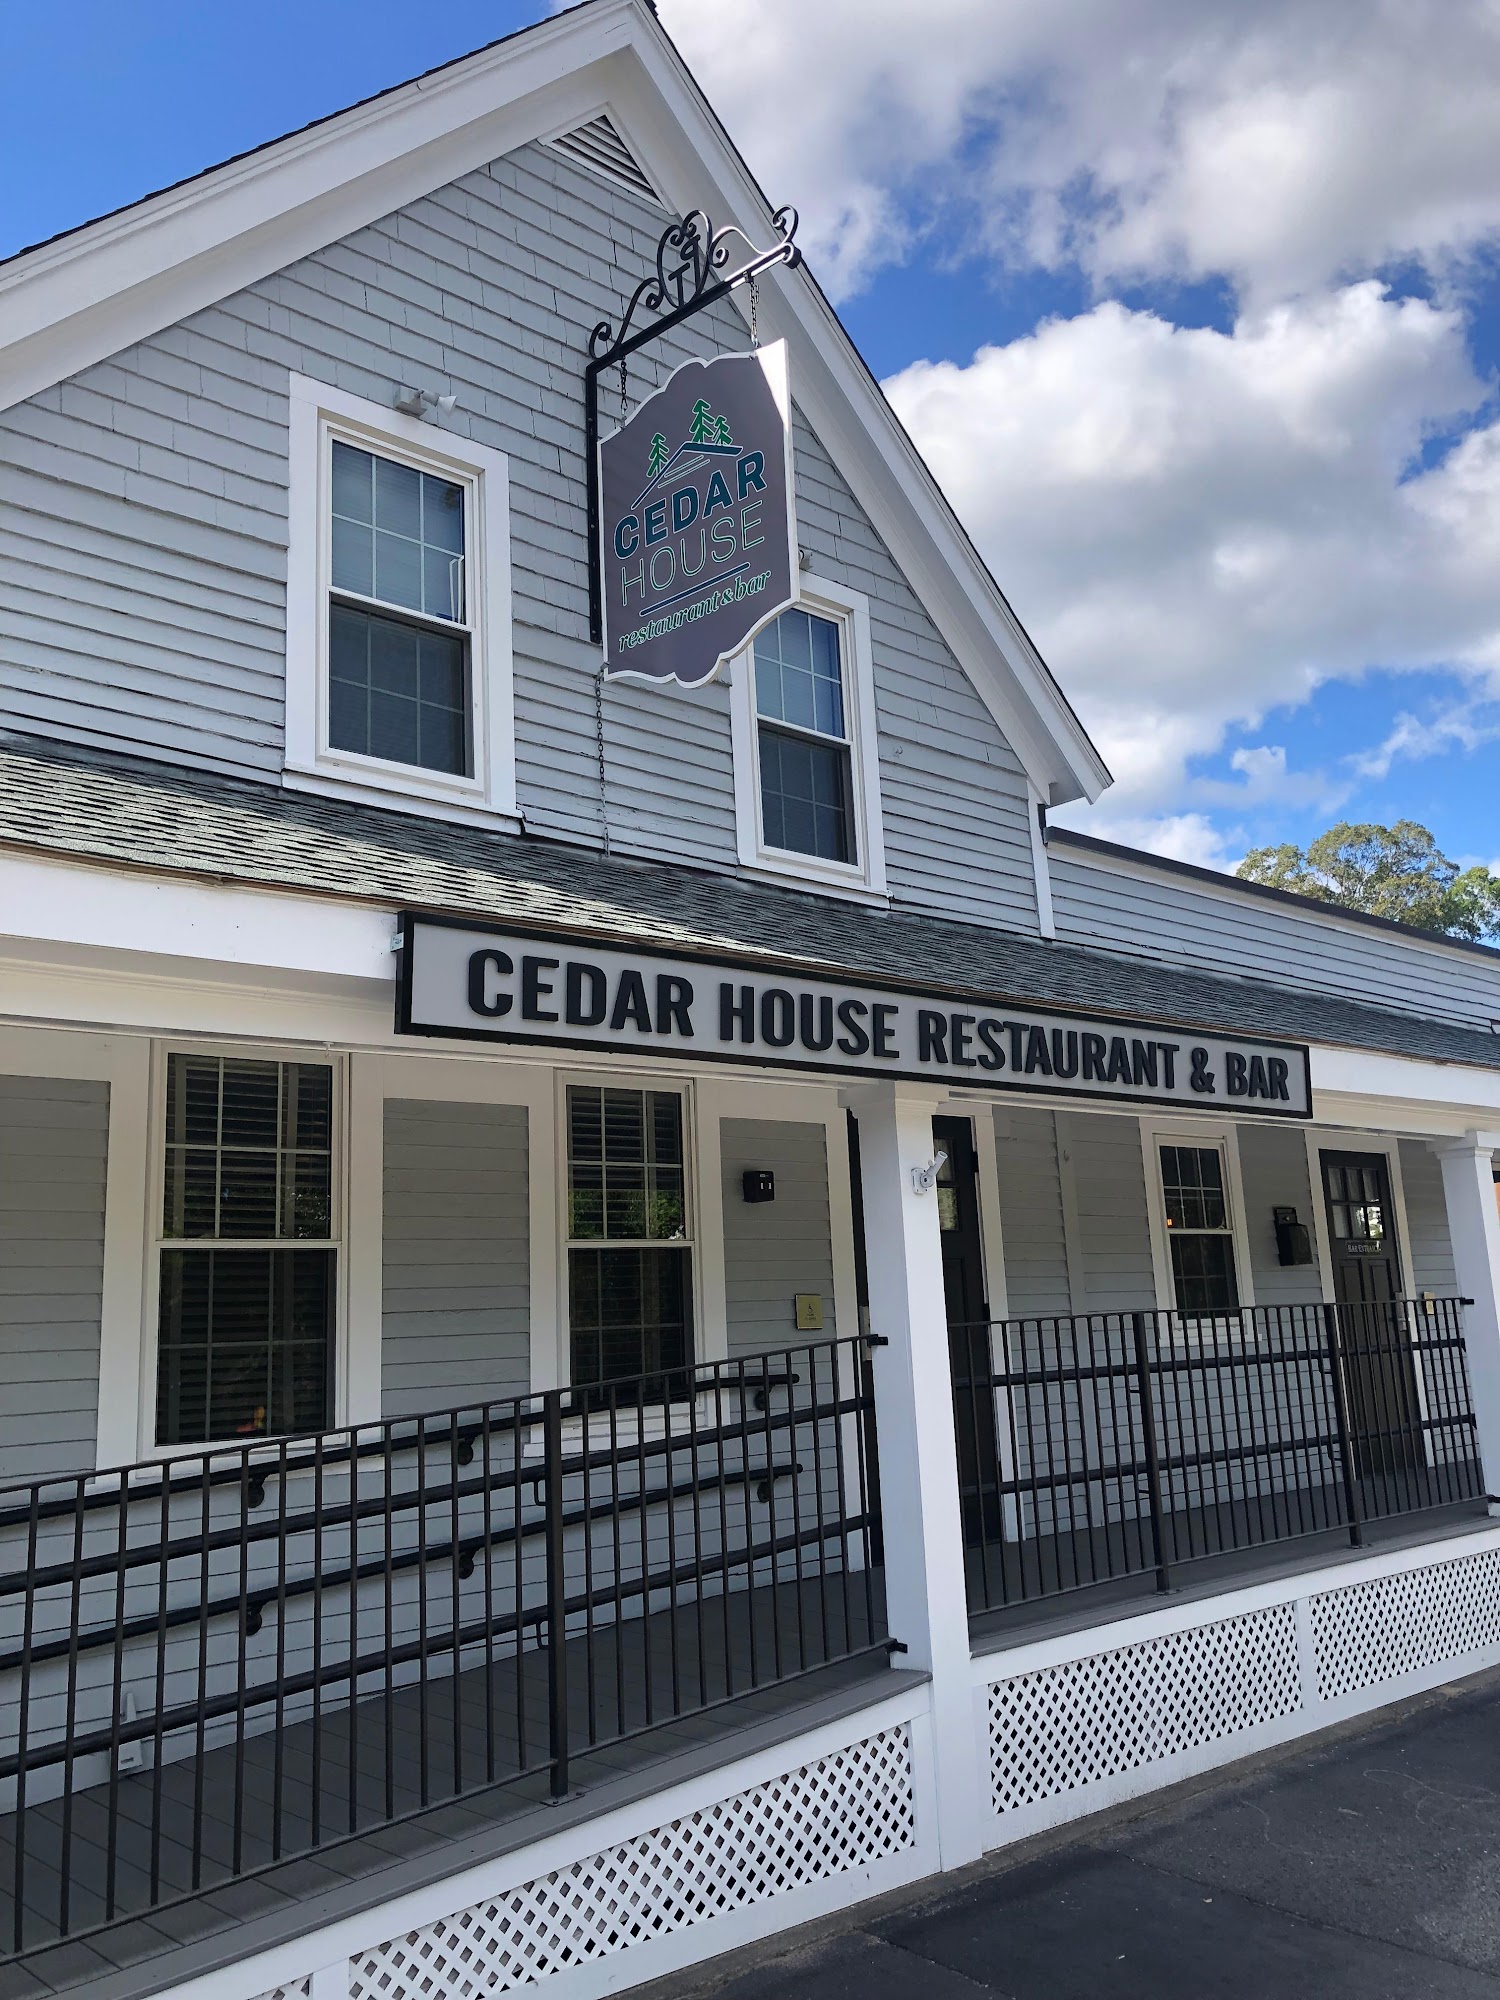 Cedar House Restaurant & Bar